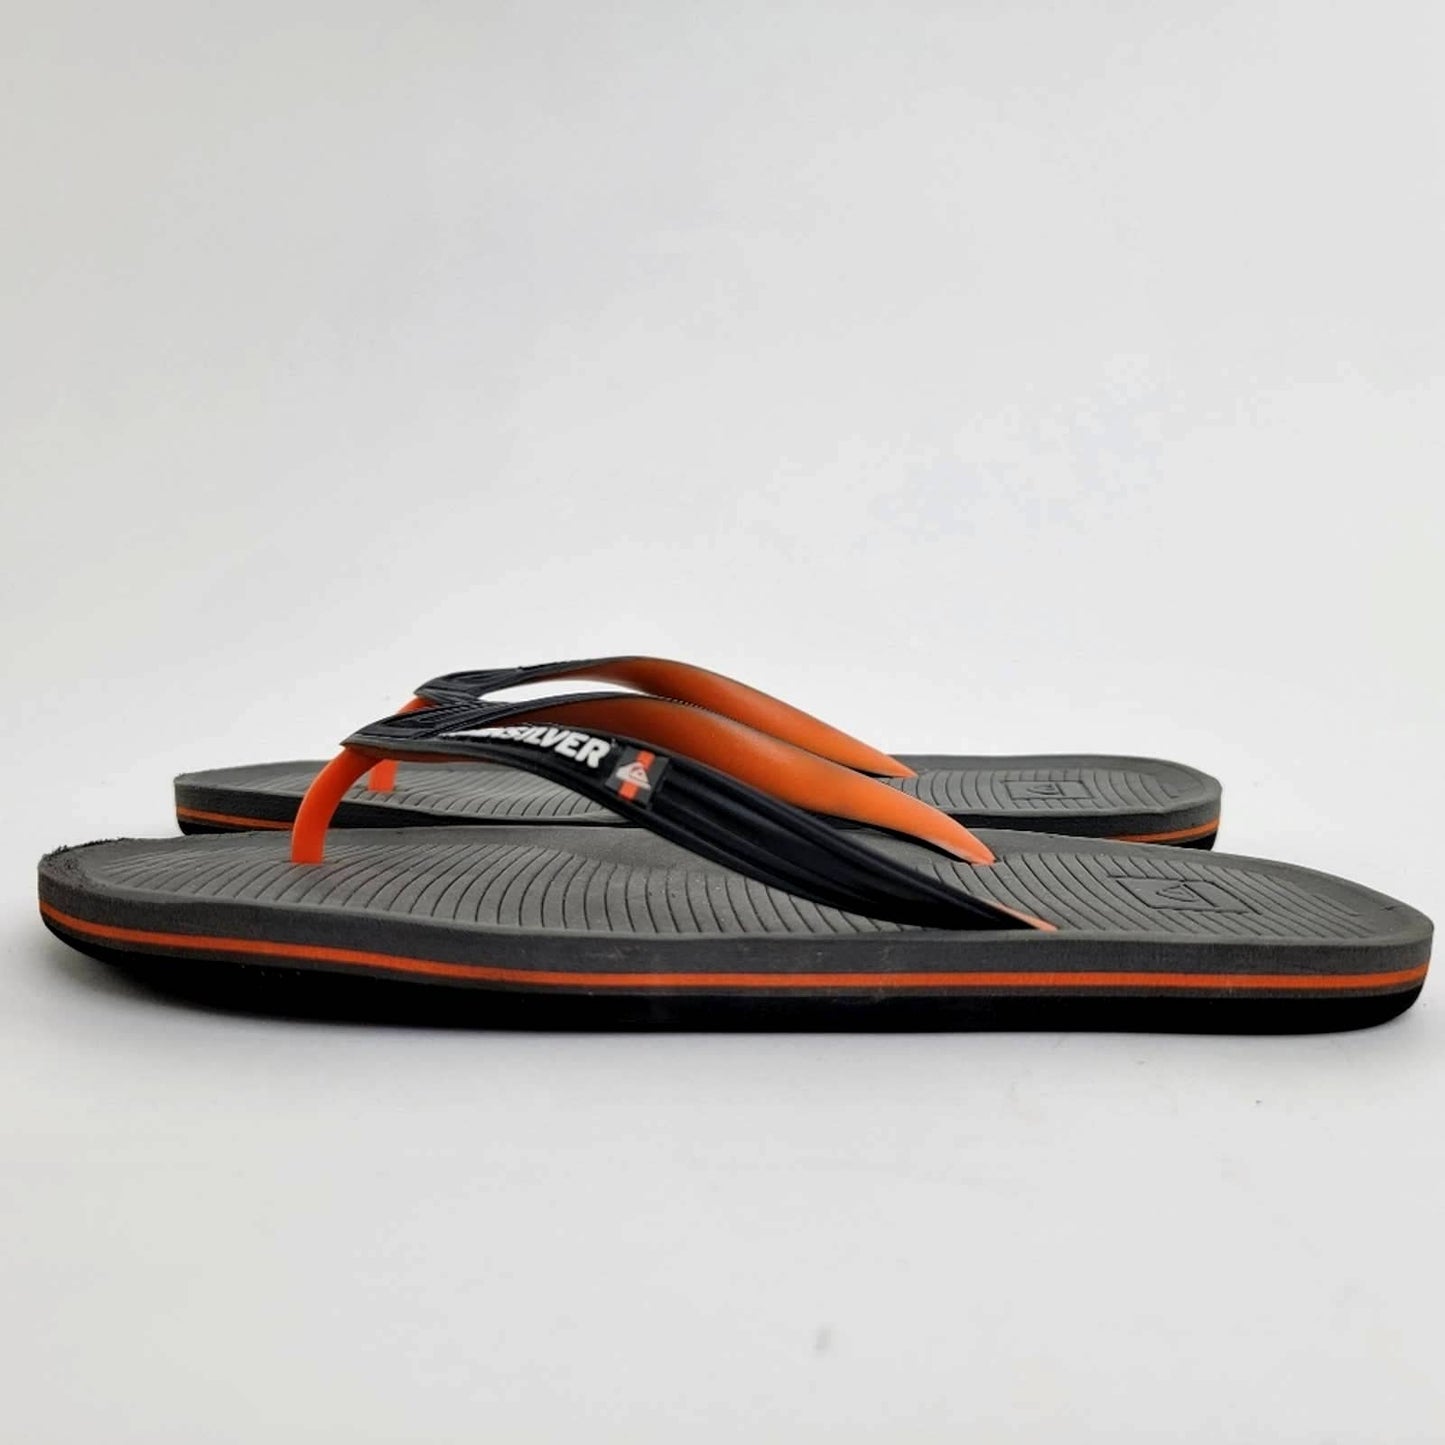 Quiksilver Black Flip Flop Sandals - 11